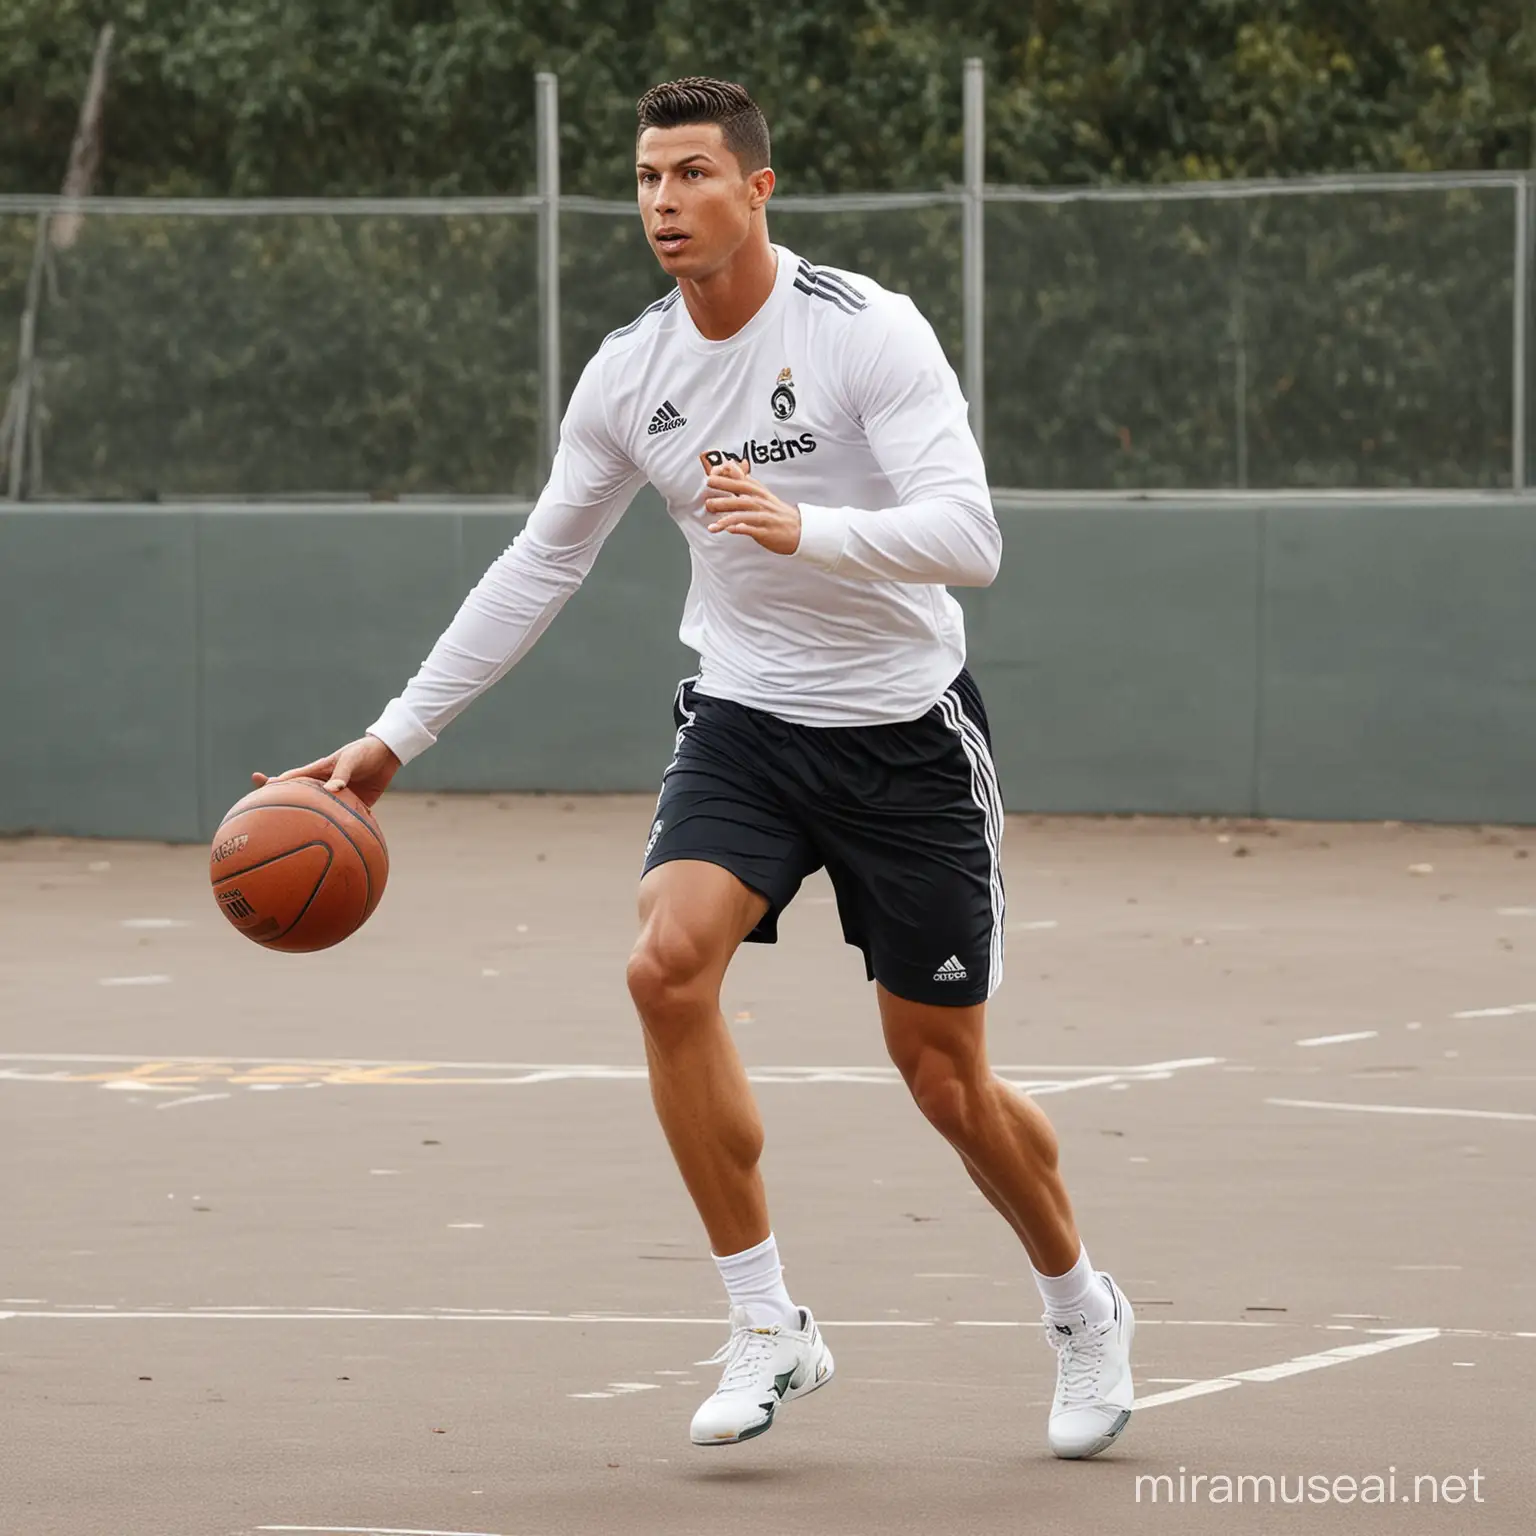 Soccer Star Cristiano Ronaldo Enjoys a Casual Basketball Game